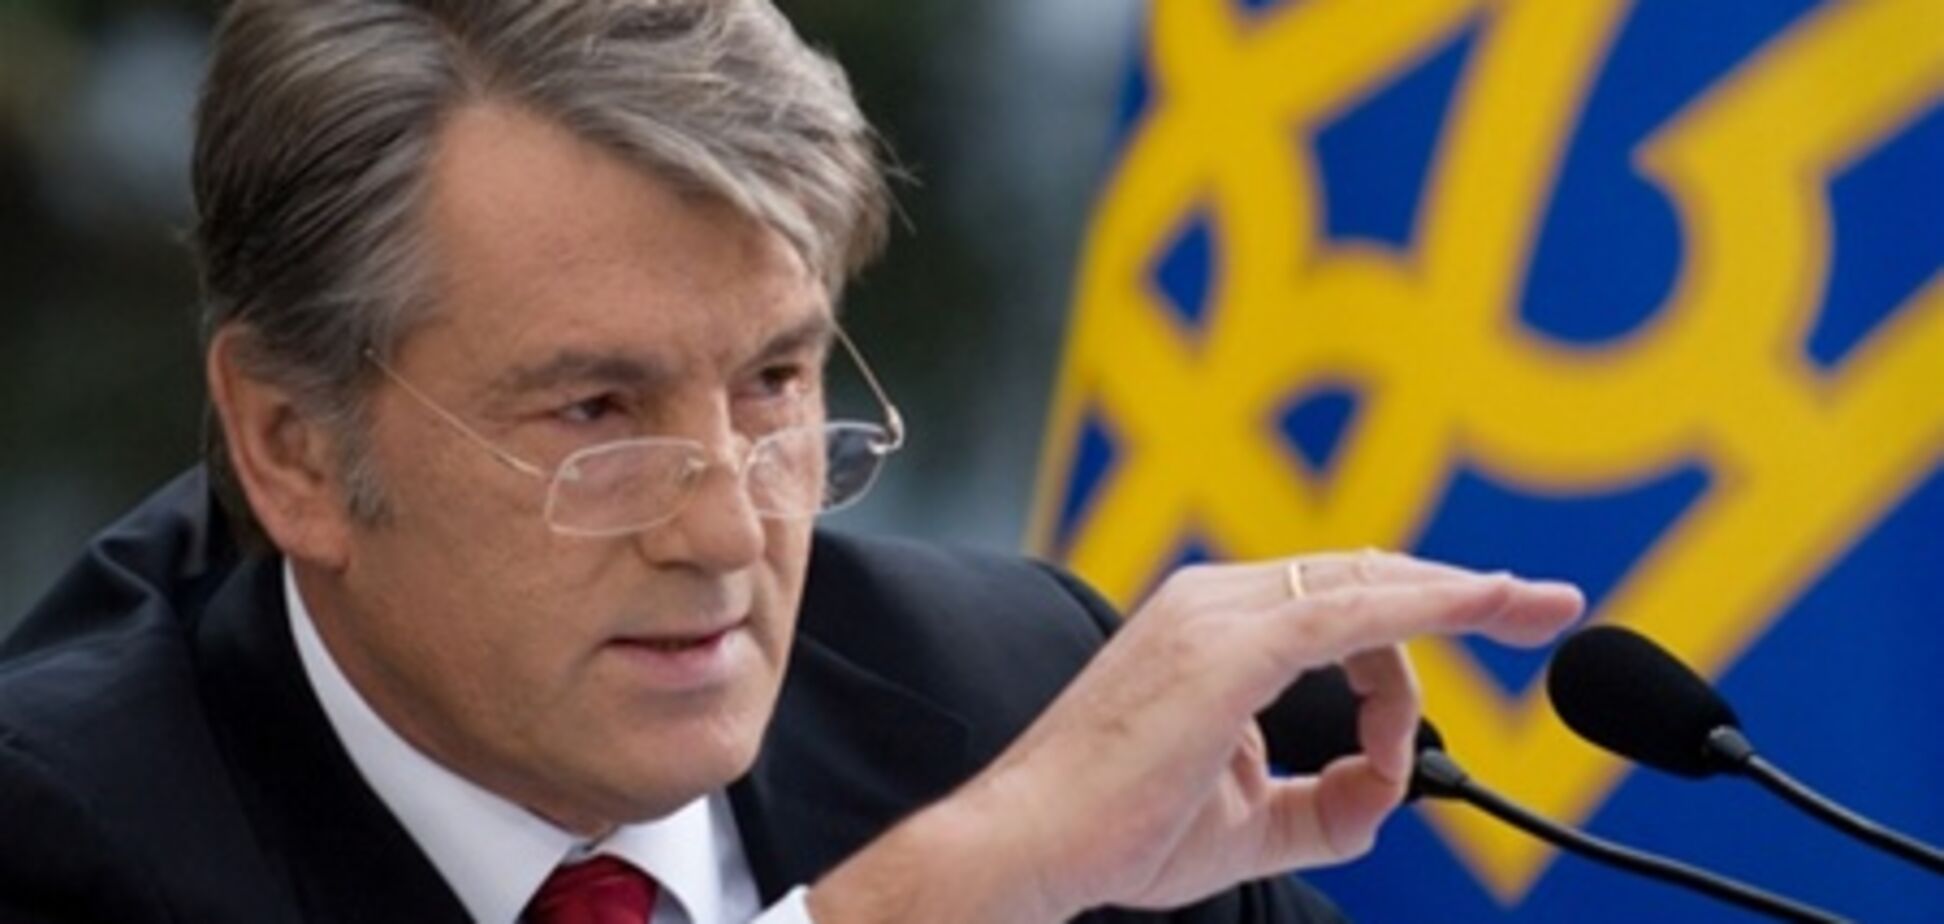 Ющенко: Тимошенко предала национальные интересы Украины